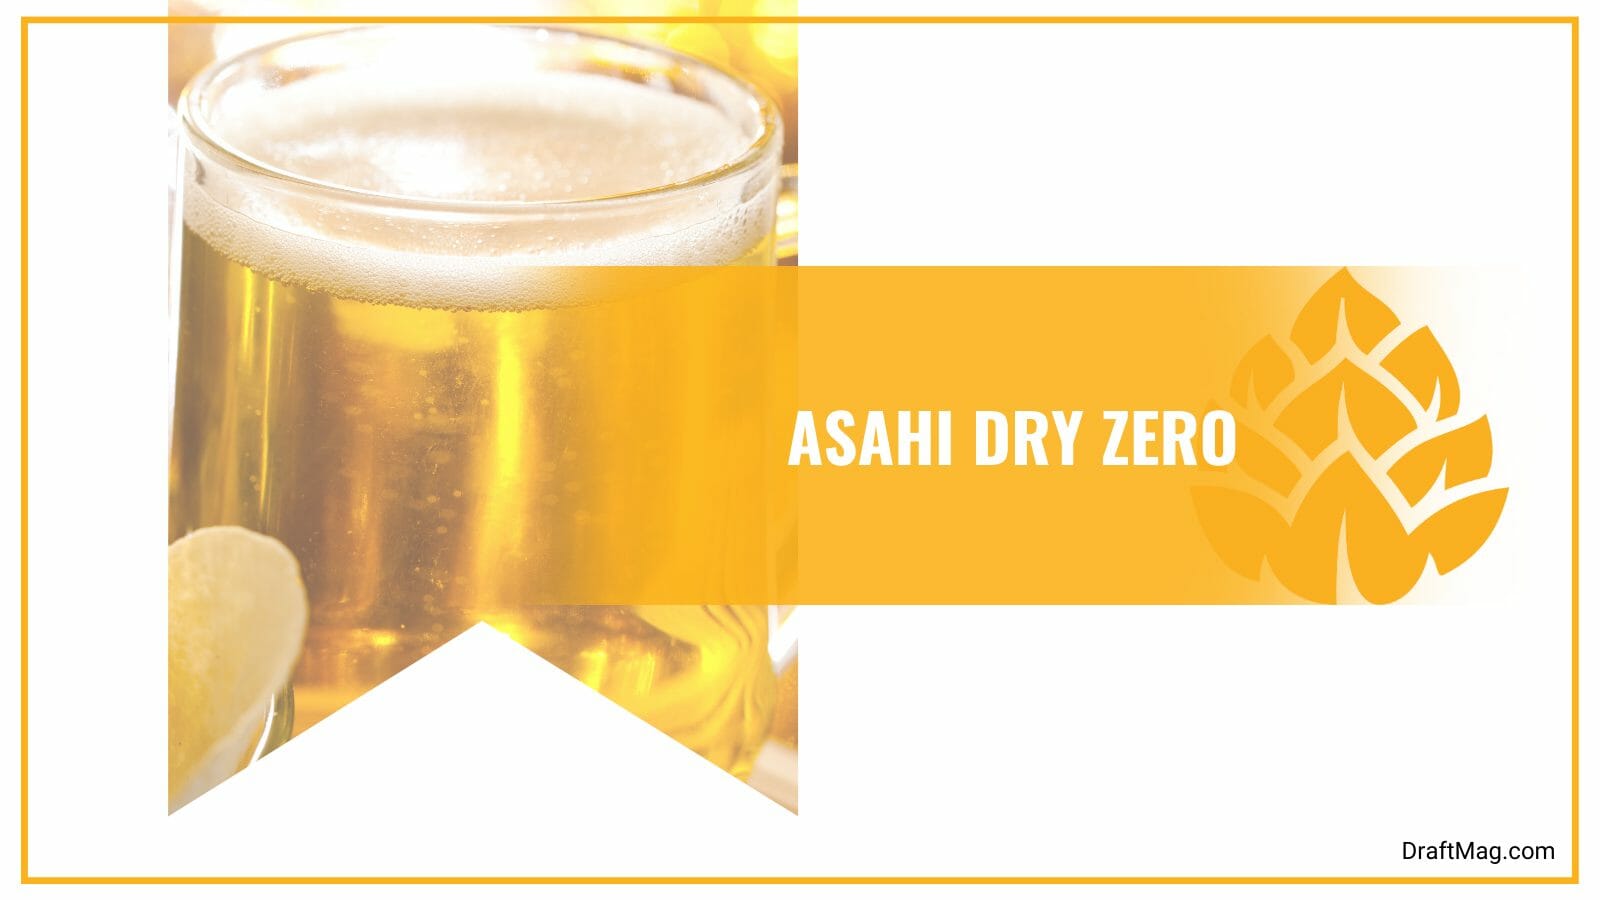 Asahi Dry Zero with Low Calories